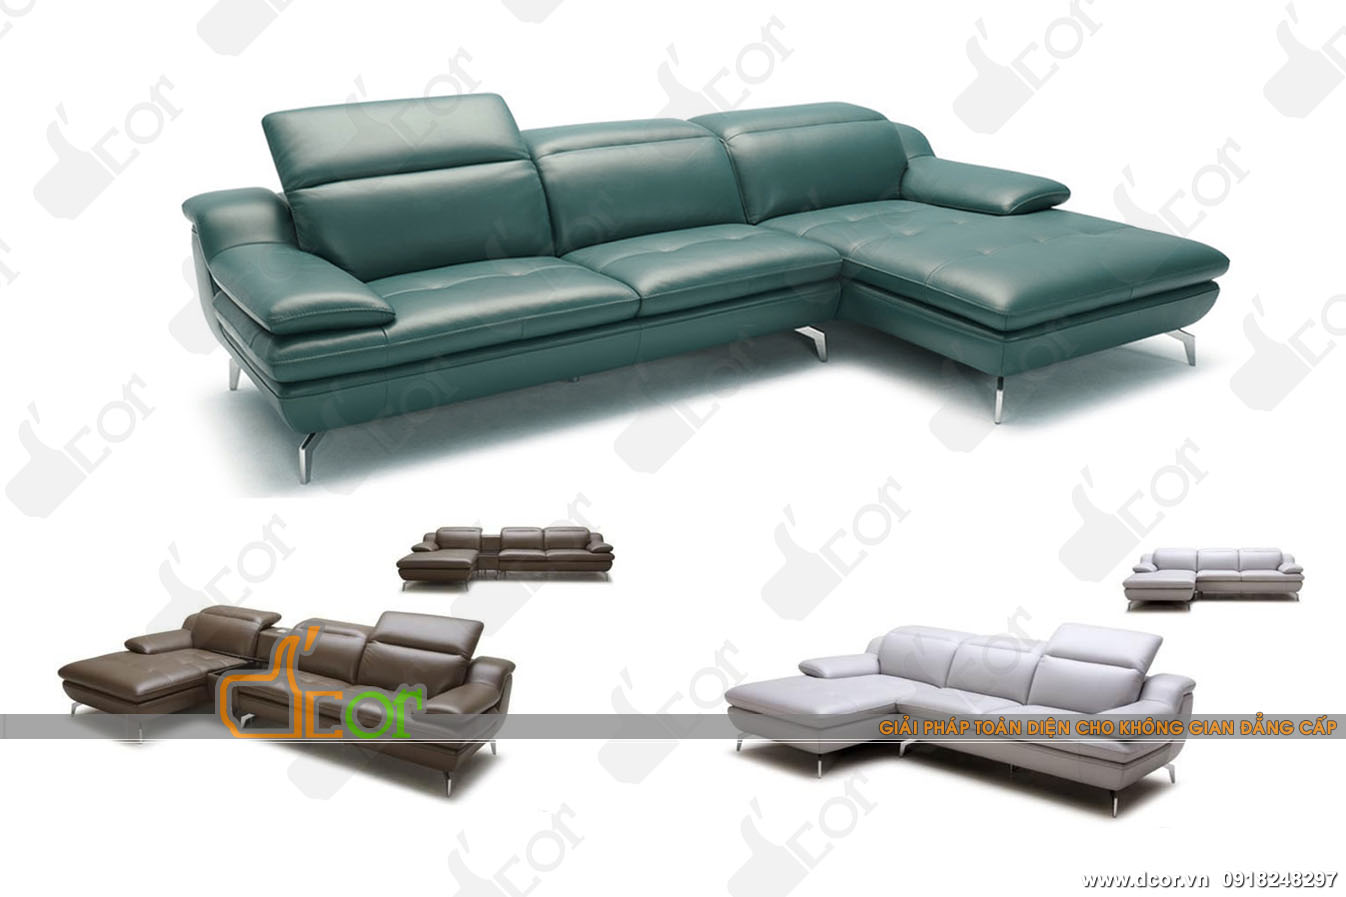 DG100 – Mẫu ghế sofa góc với kiểu dáng thiết kế vượt trội > 